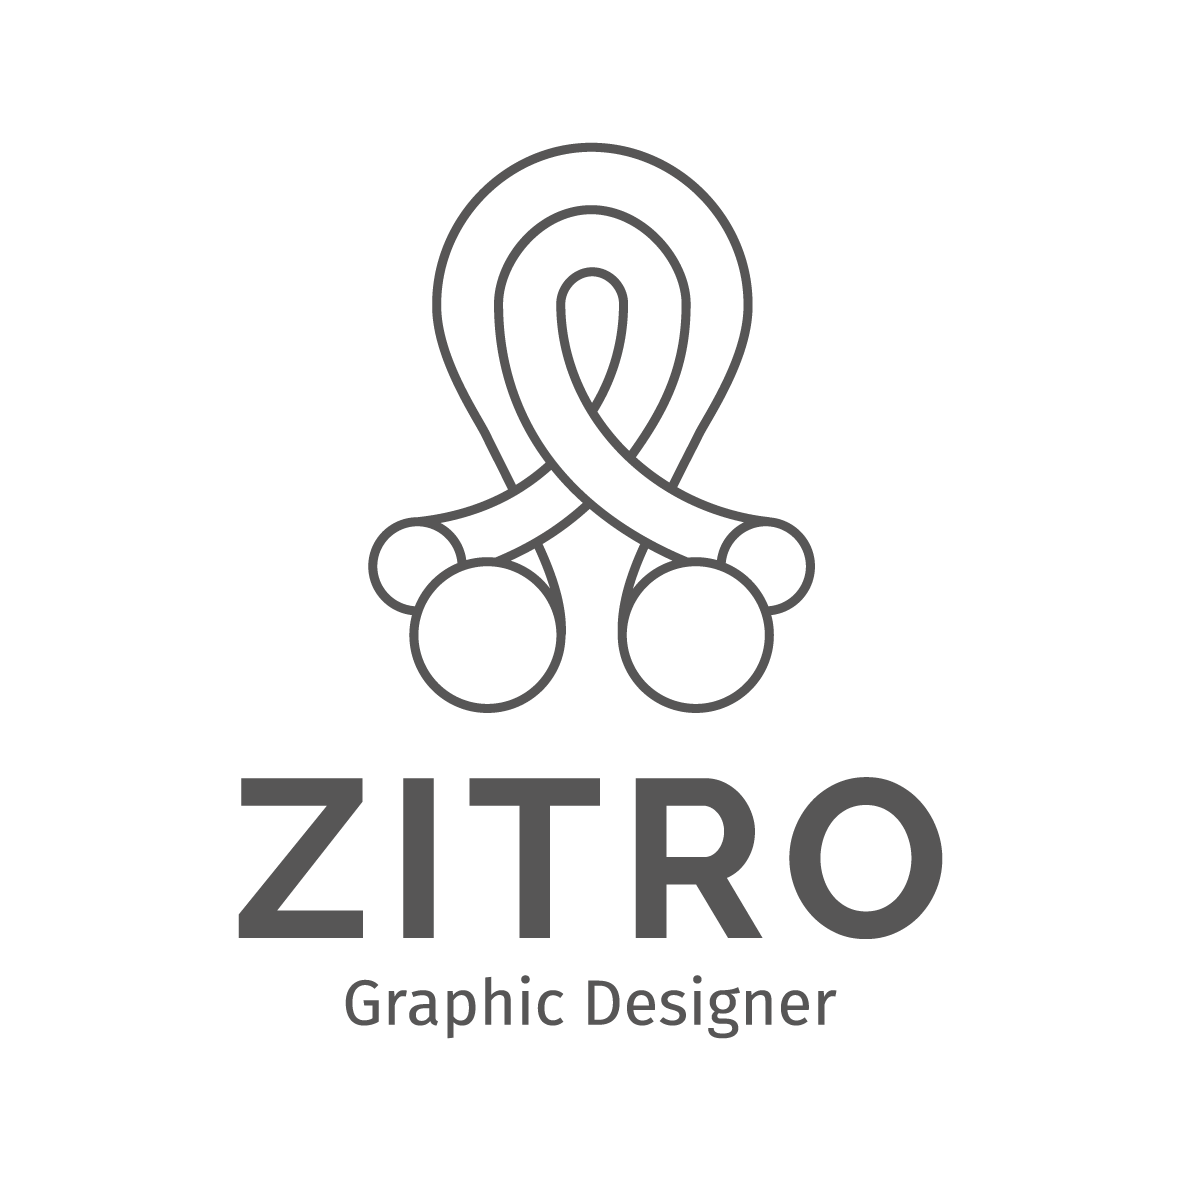 ZITRO Graphic Designer